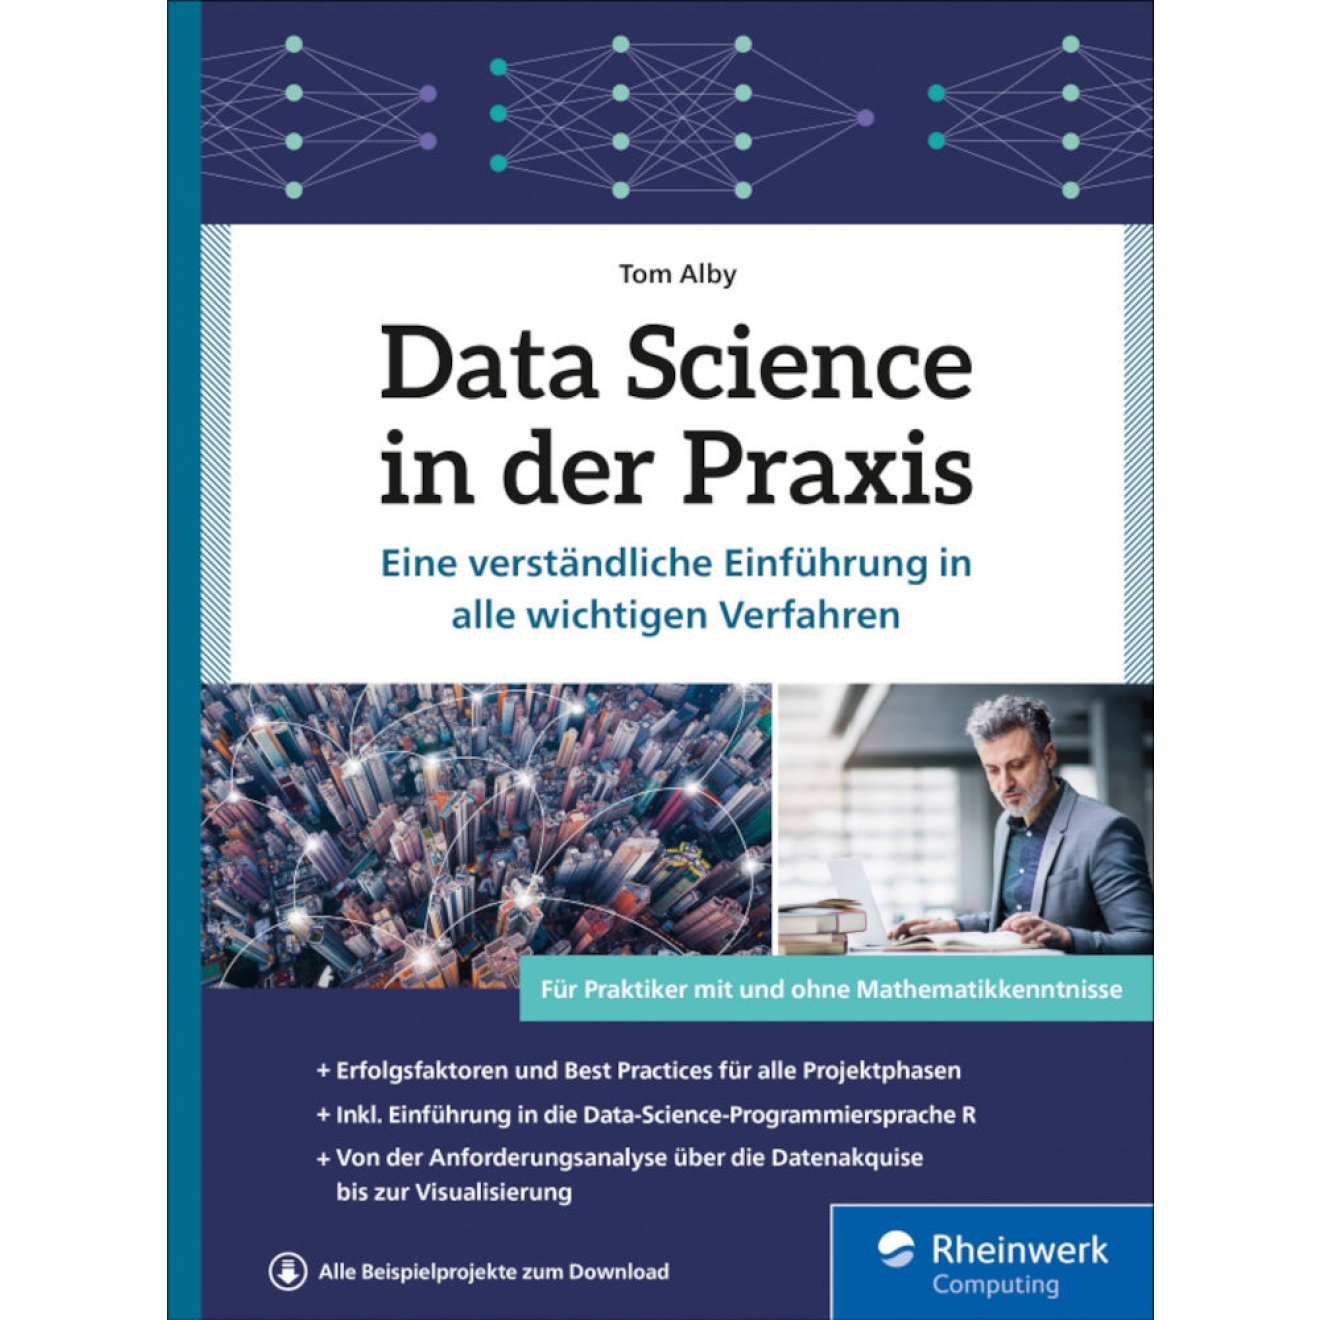 Data Science in der Praxis